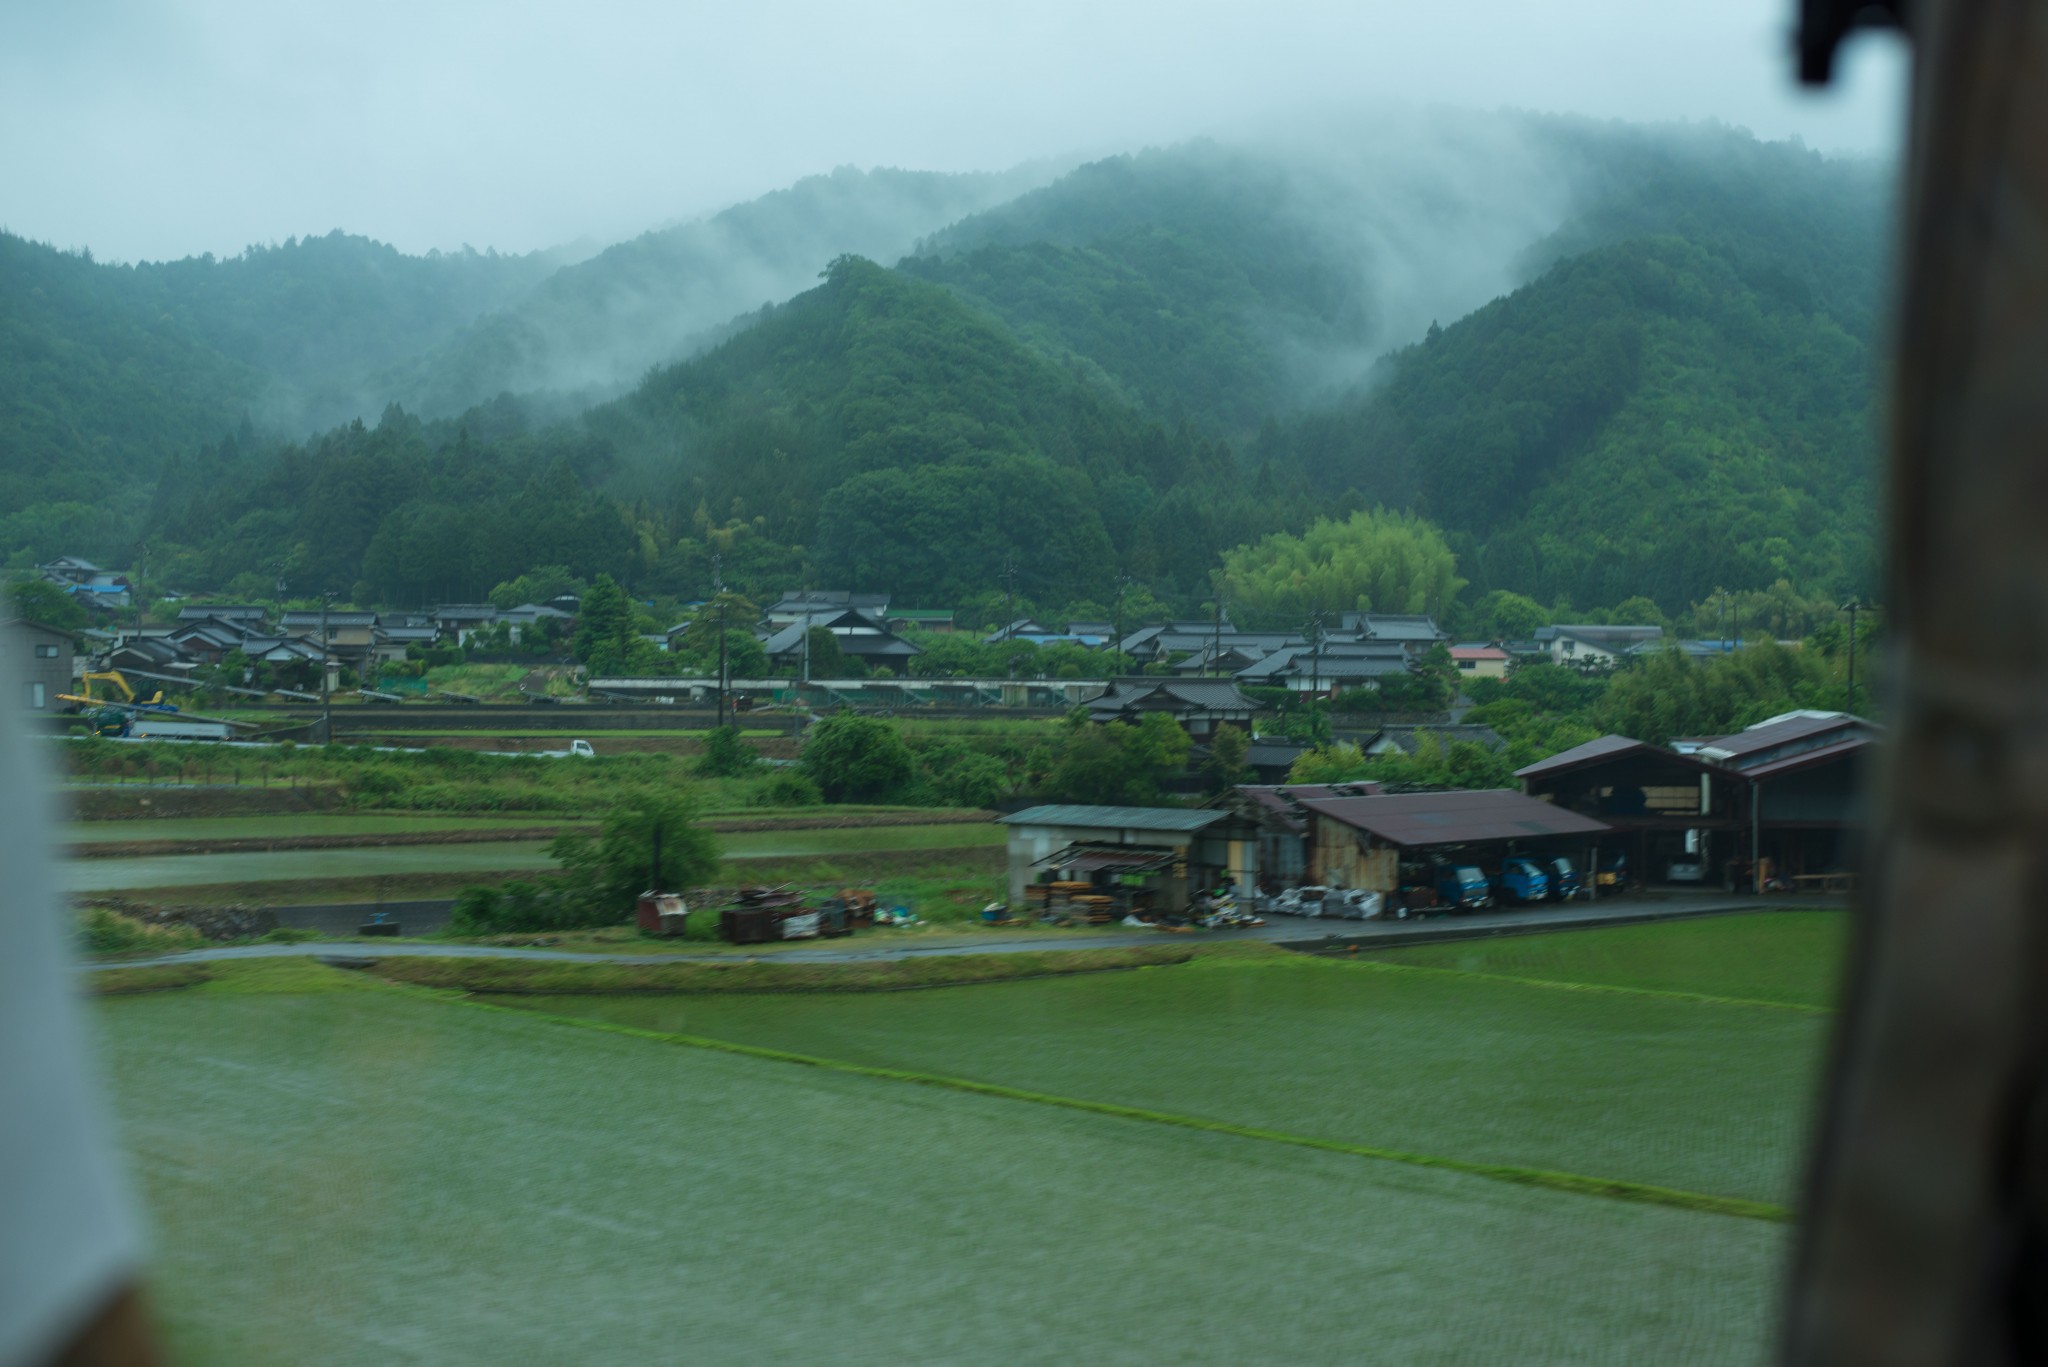 自然豊かな愛媛県。道中、風光明媚な景色に目を奪われる瞬間も。